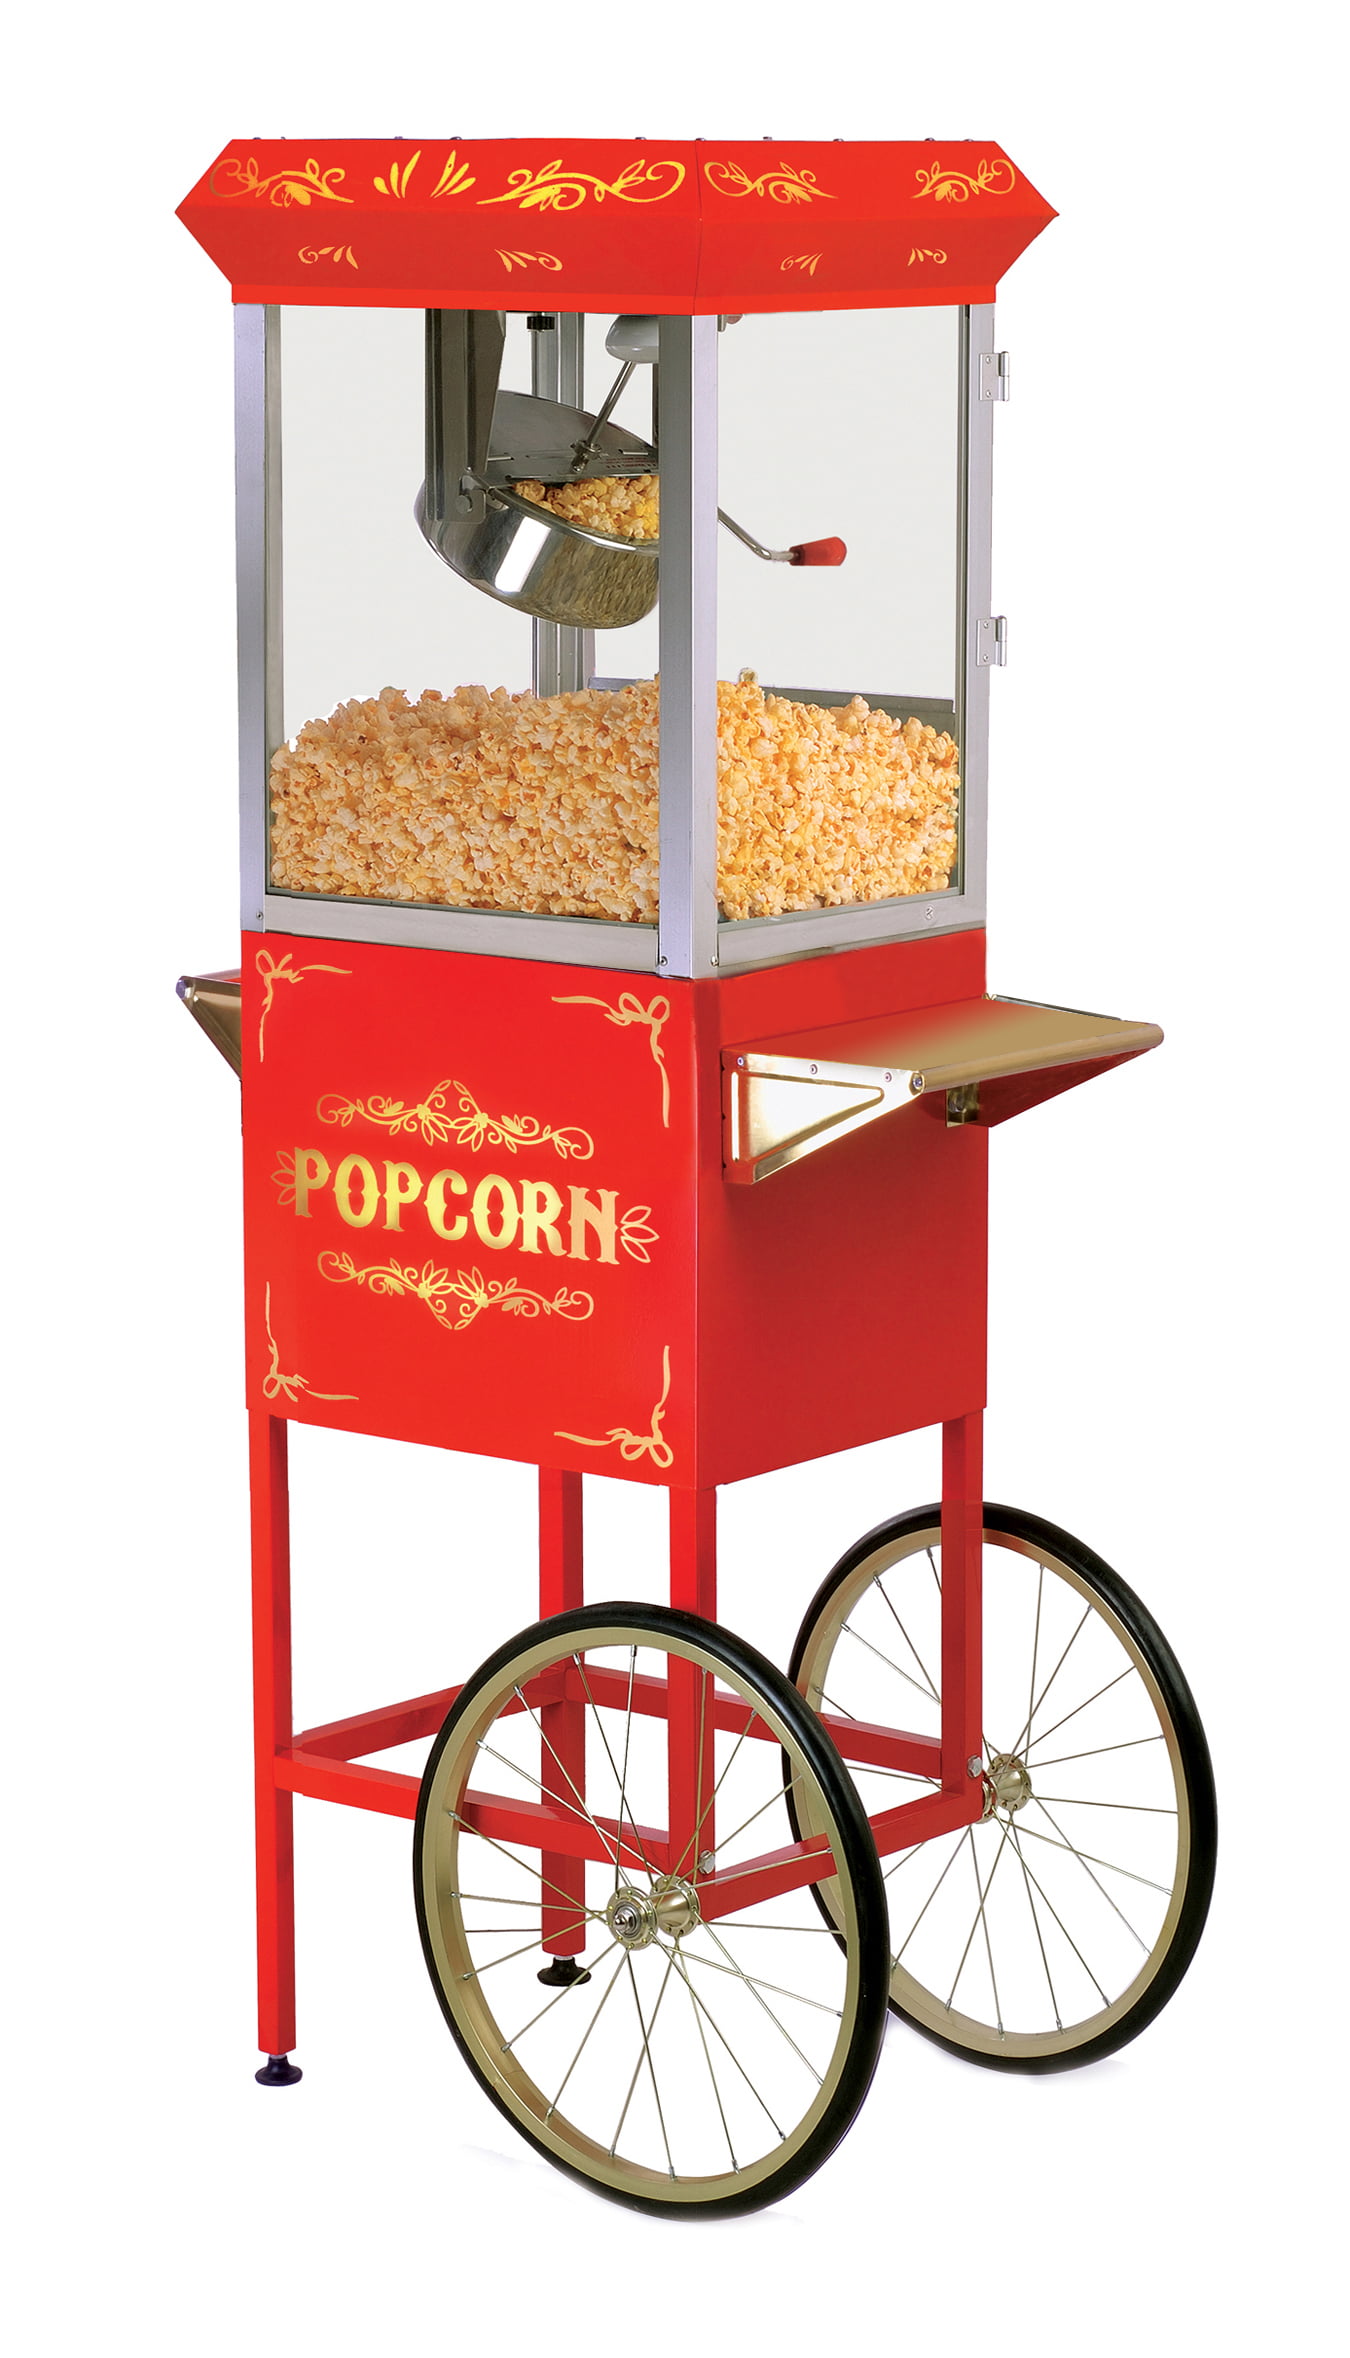 Best Buy: Elite 16-Cup Popcorn Trolley Red EPM-299